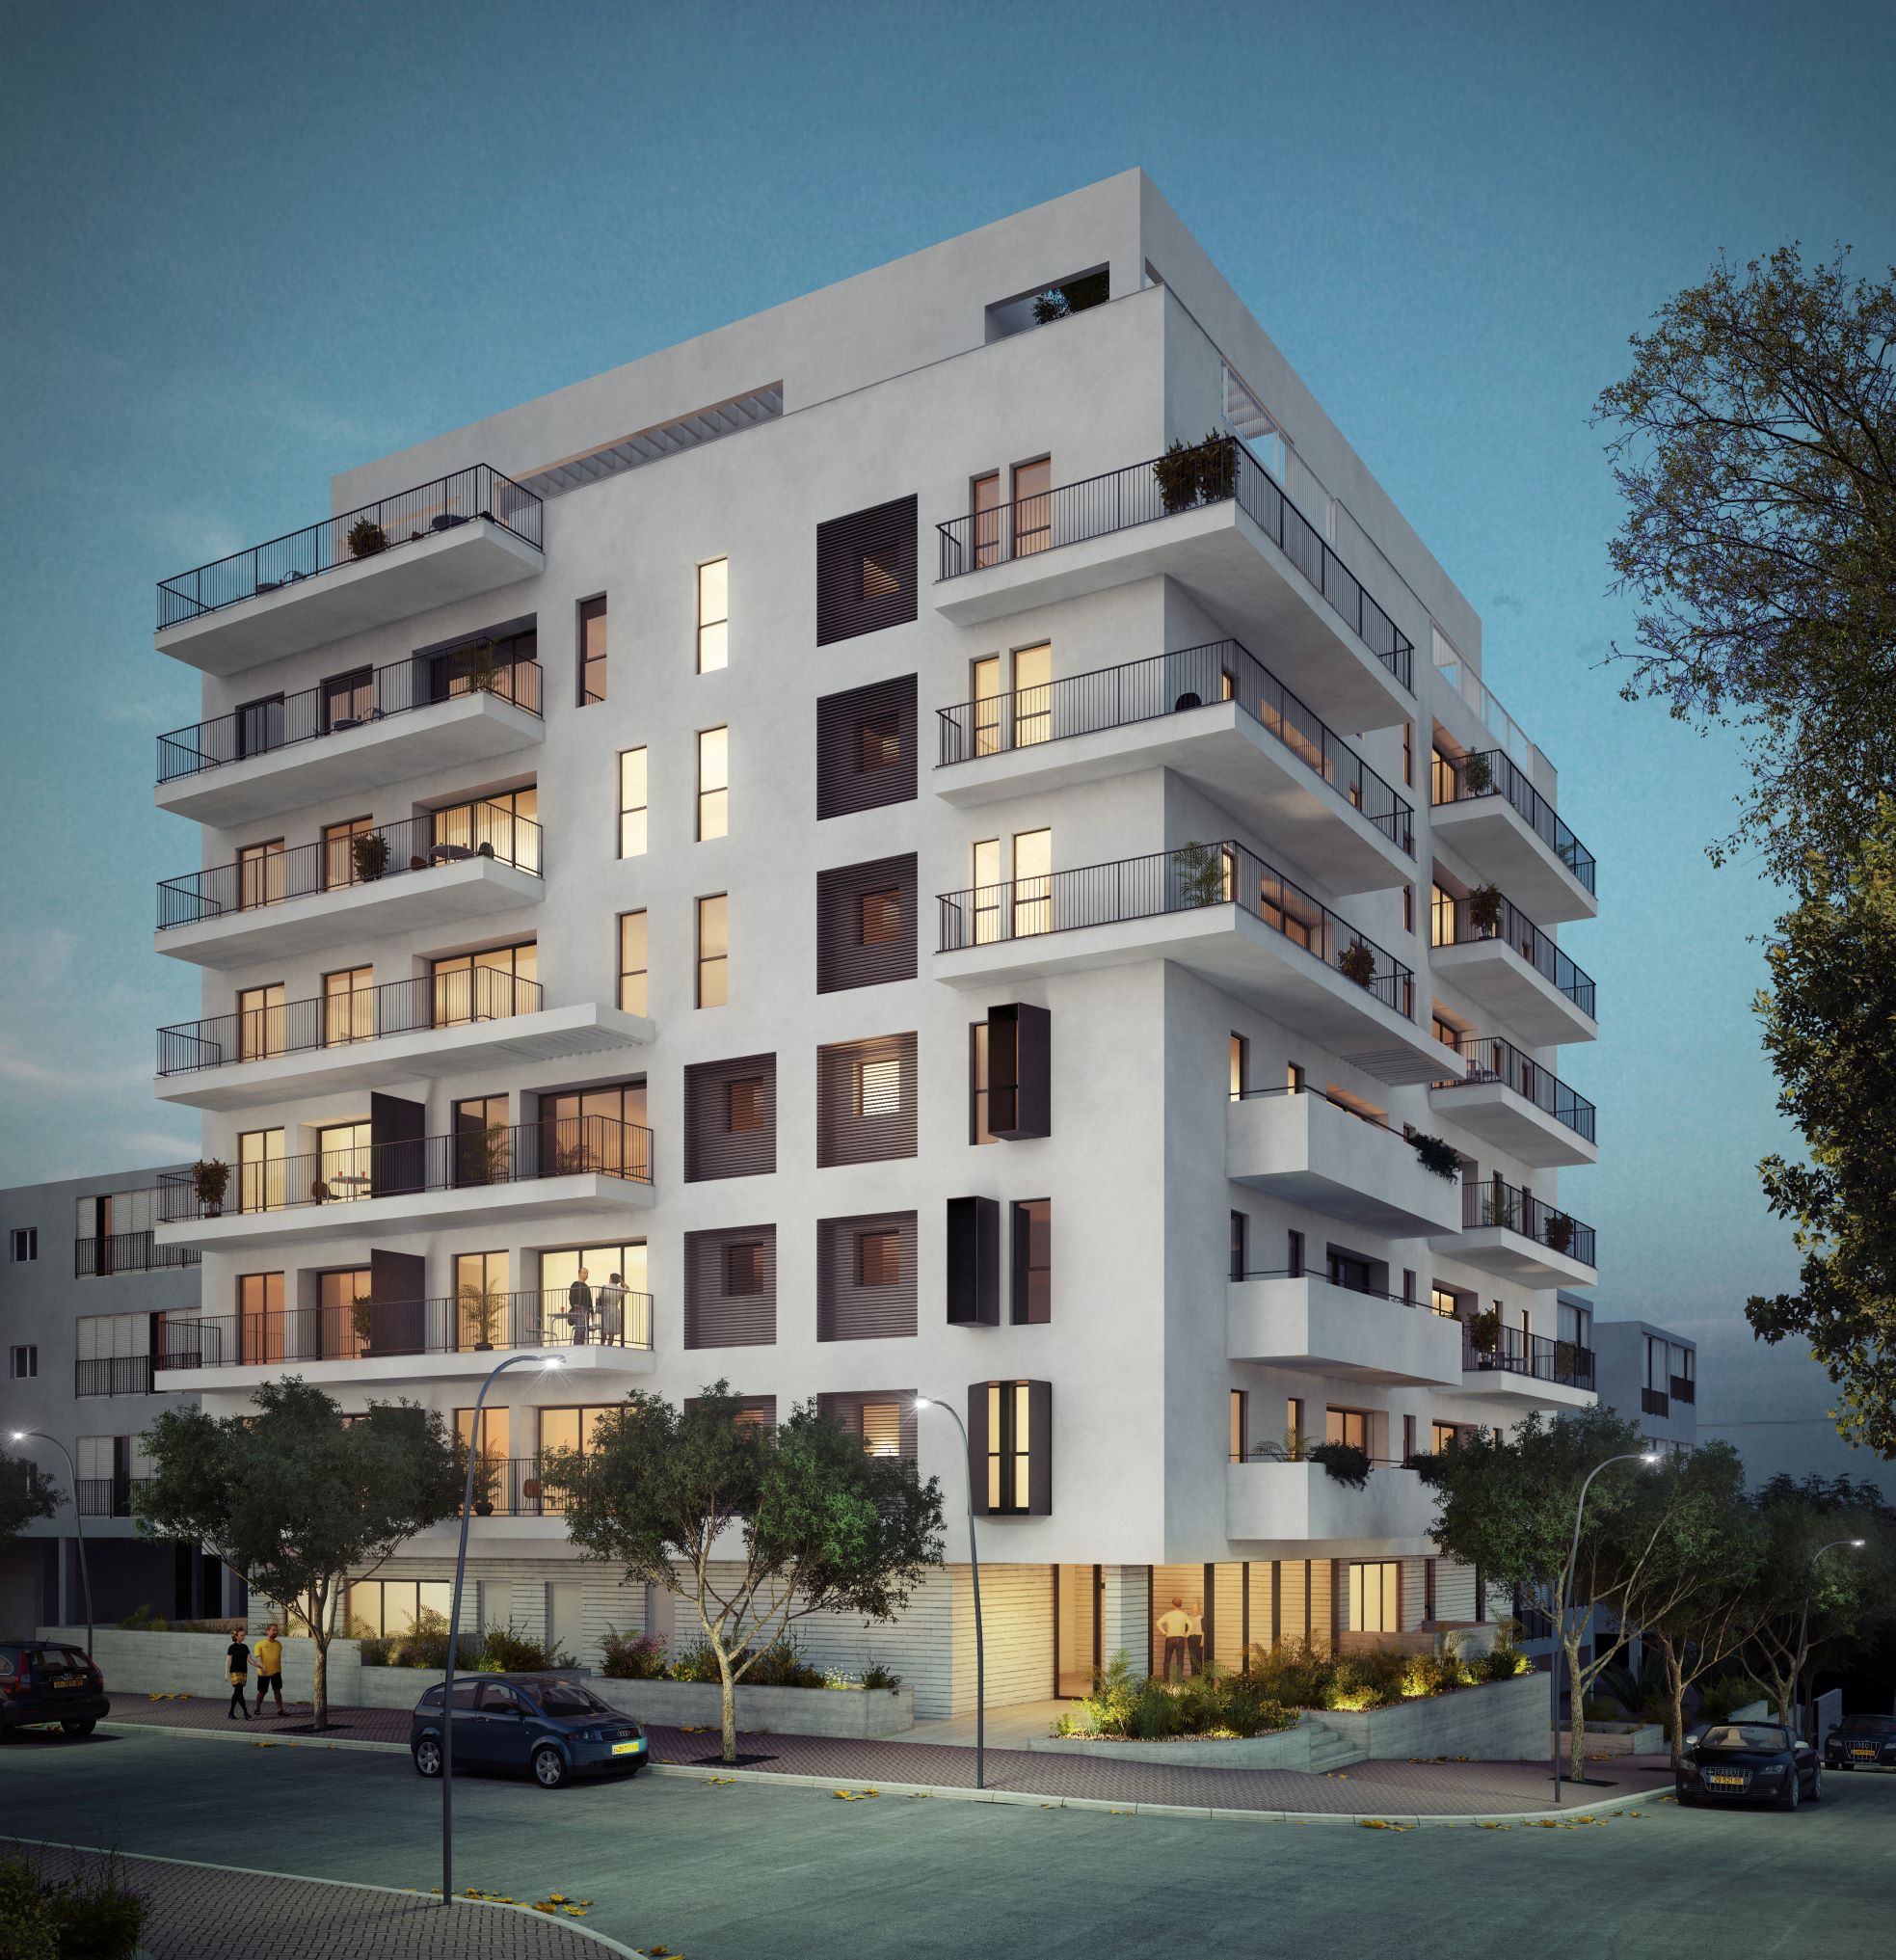 23 דירות נמכרו בפרויקט ההתחדשות העירונית הגבוה ביותר בגבעת רמב"ם